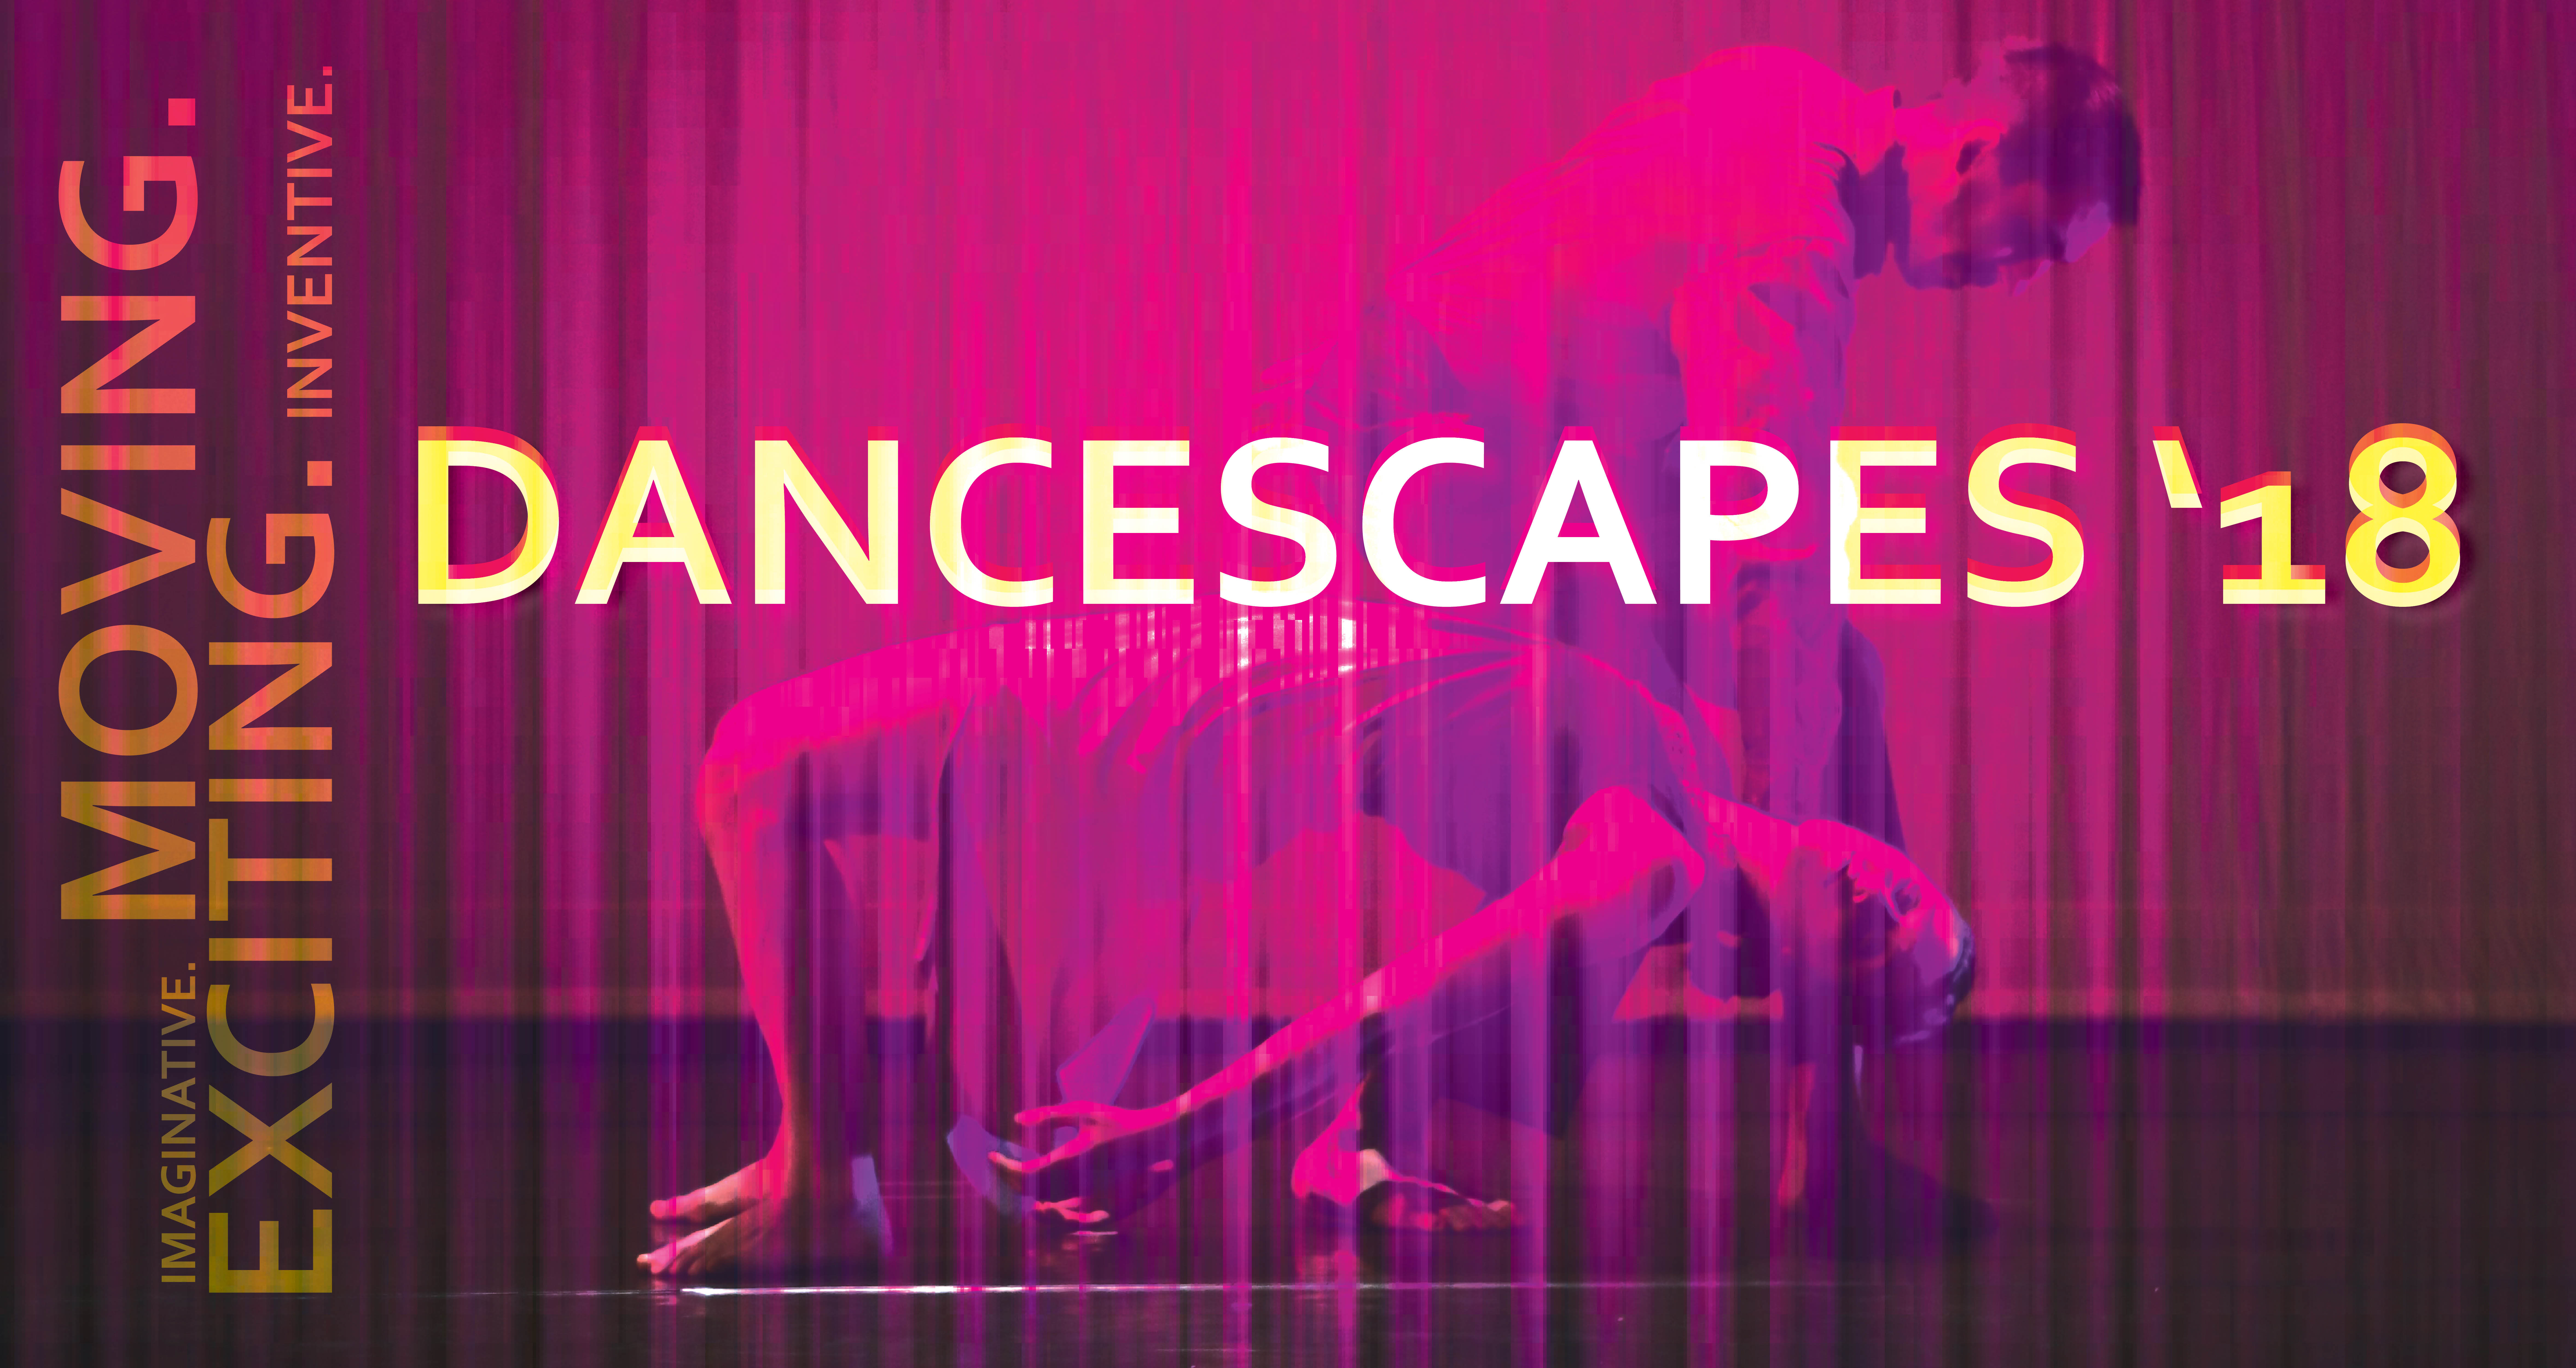 DanceScapes '18 